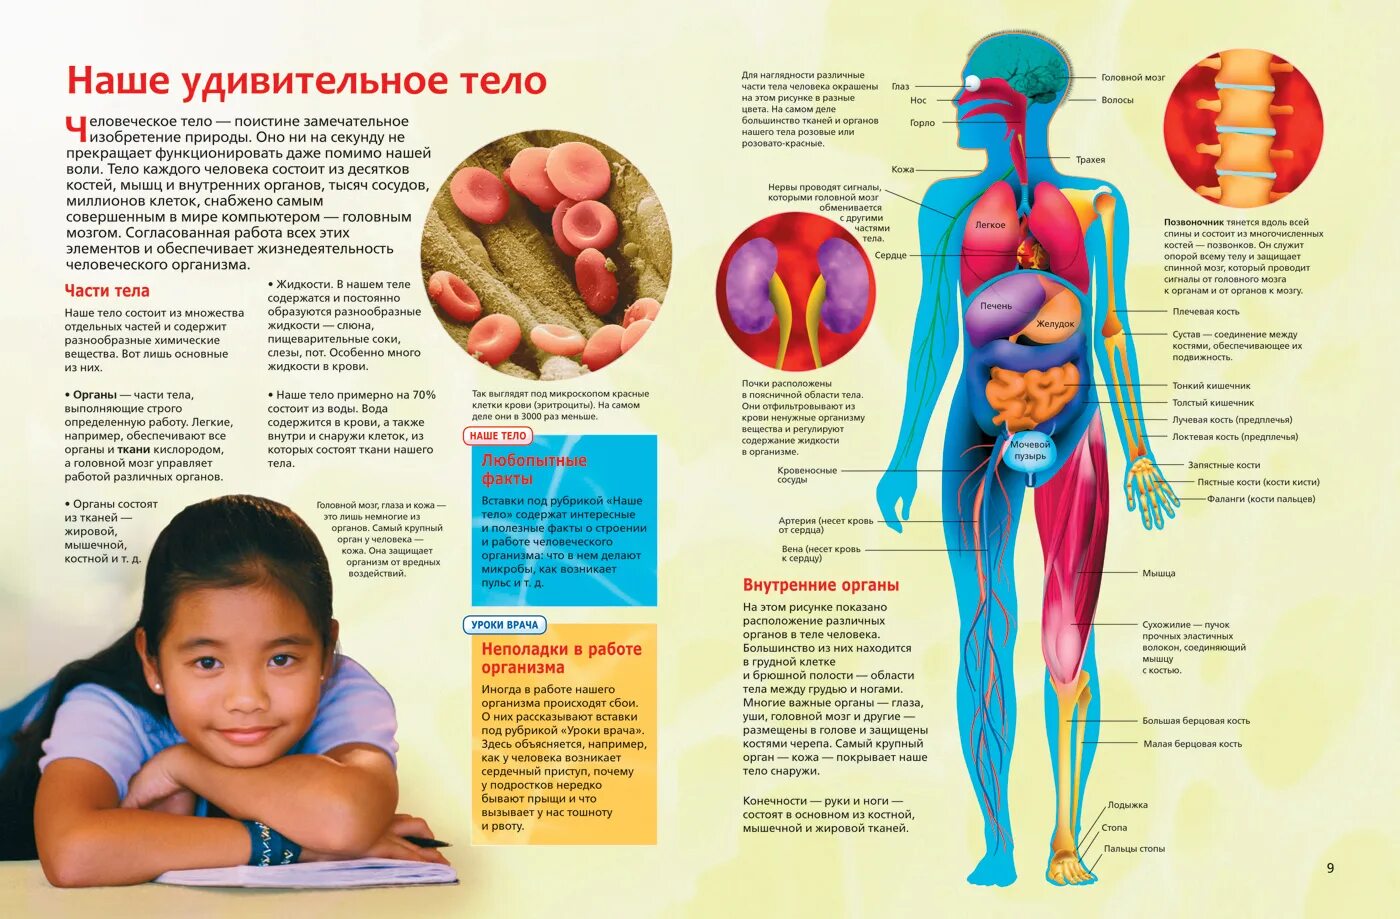 Интересные сведения о человеческом теле. Анатомия человека. Интересные факты об органах человека. Анатомия человека для детей.